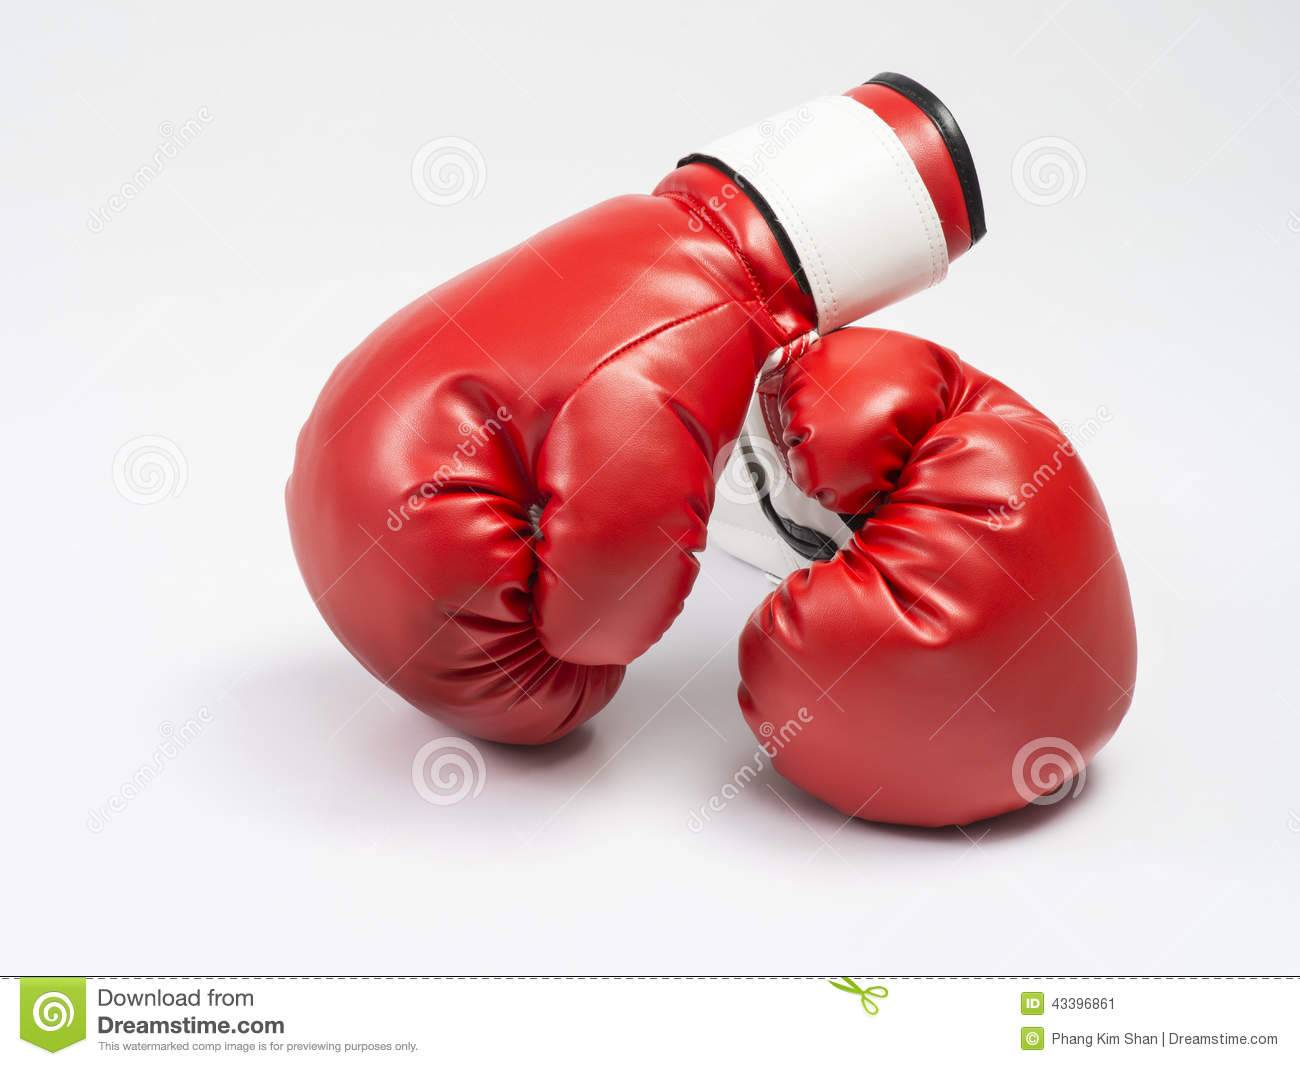 Как выбрать боксерские перчатки? :: syl.ru